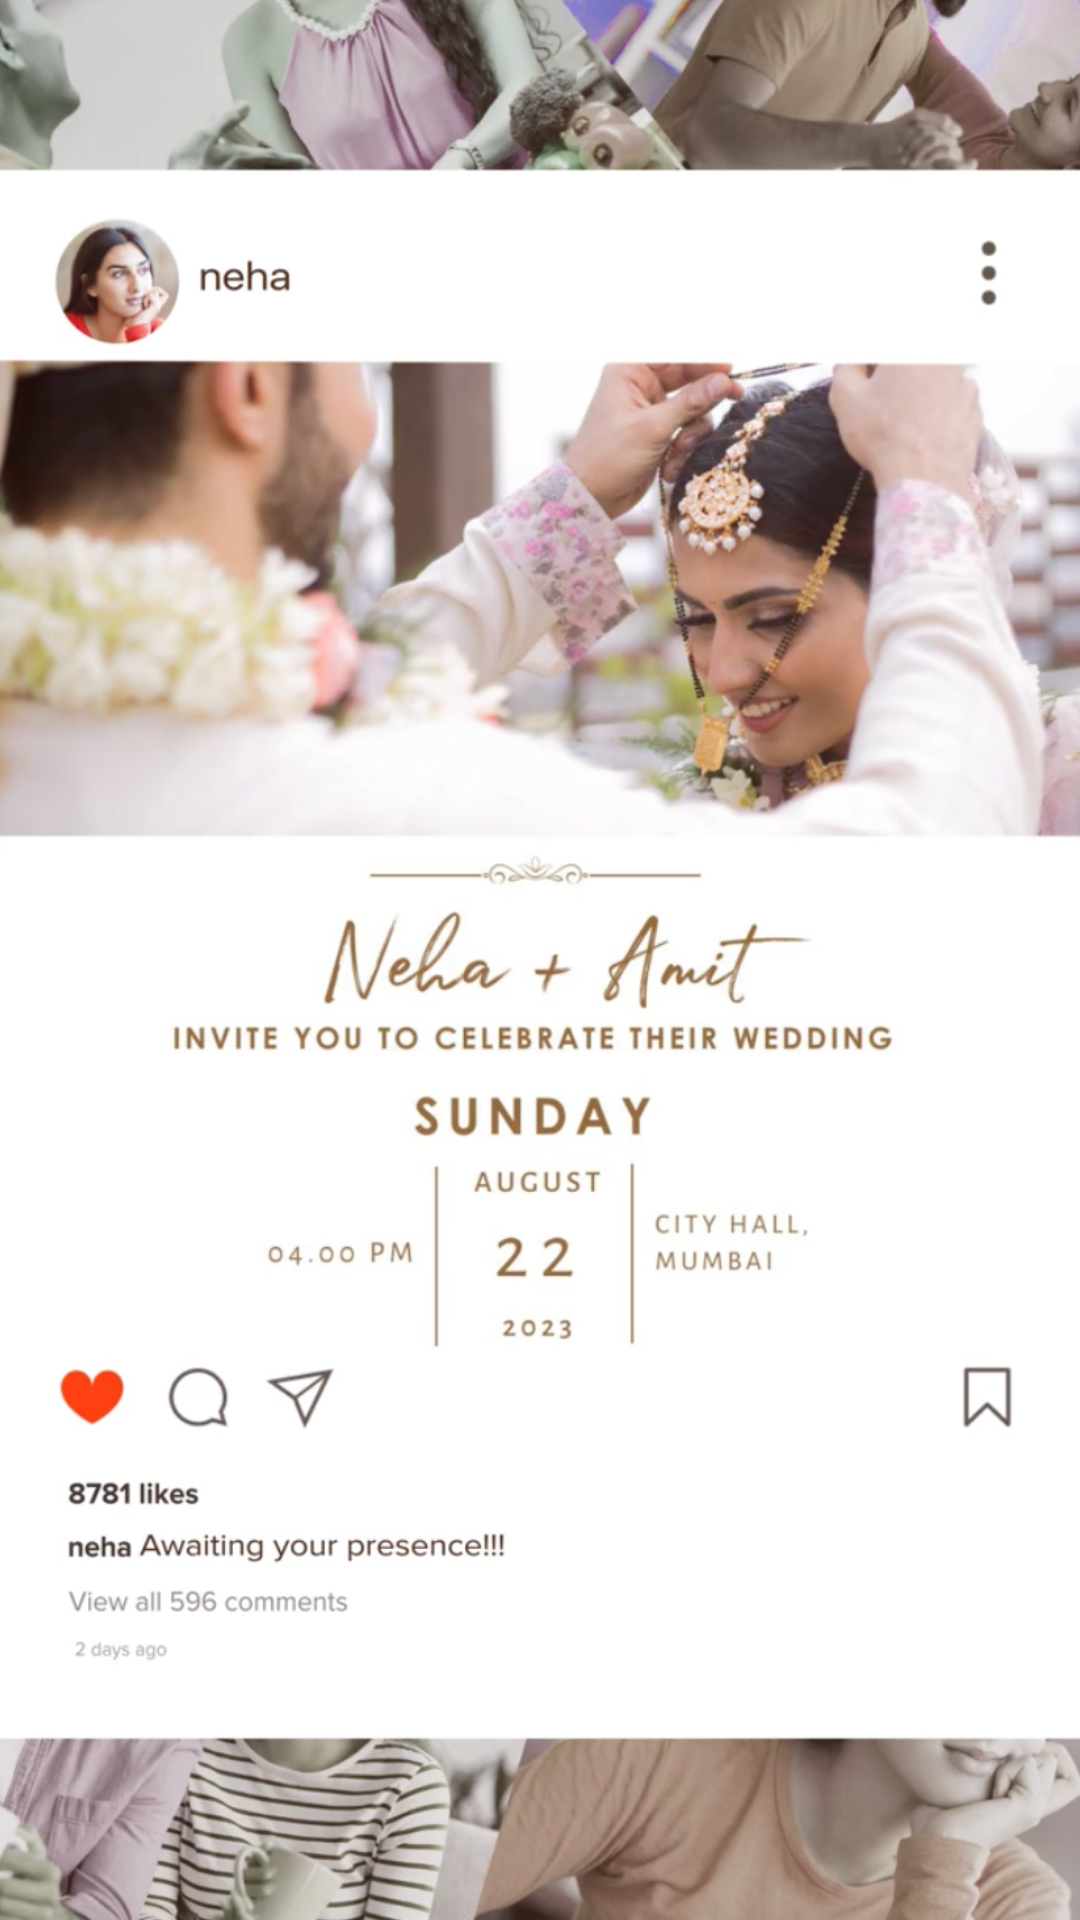 Invitación en vídeo de boda moderna india - Invitación digital de boda india con tema moderno - Reserve la fecha